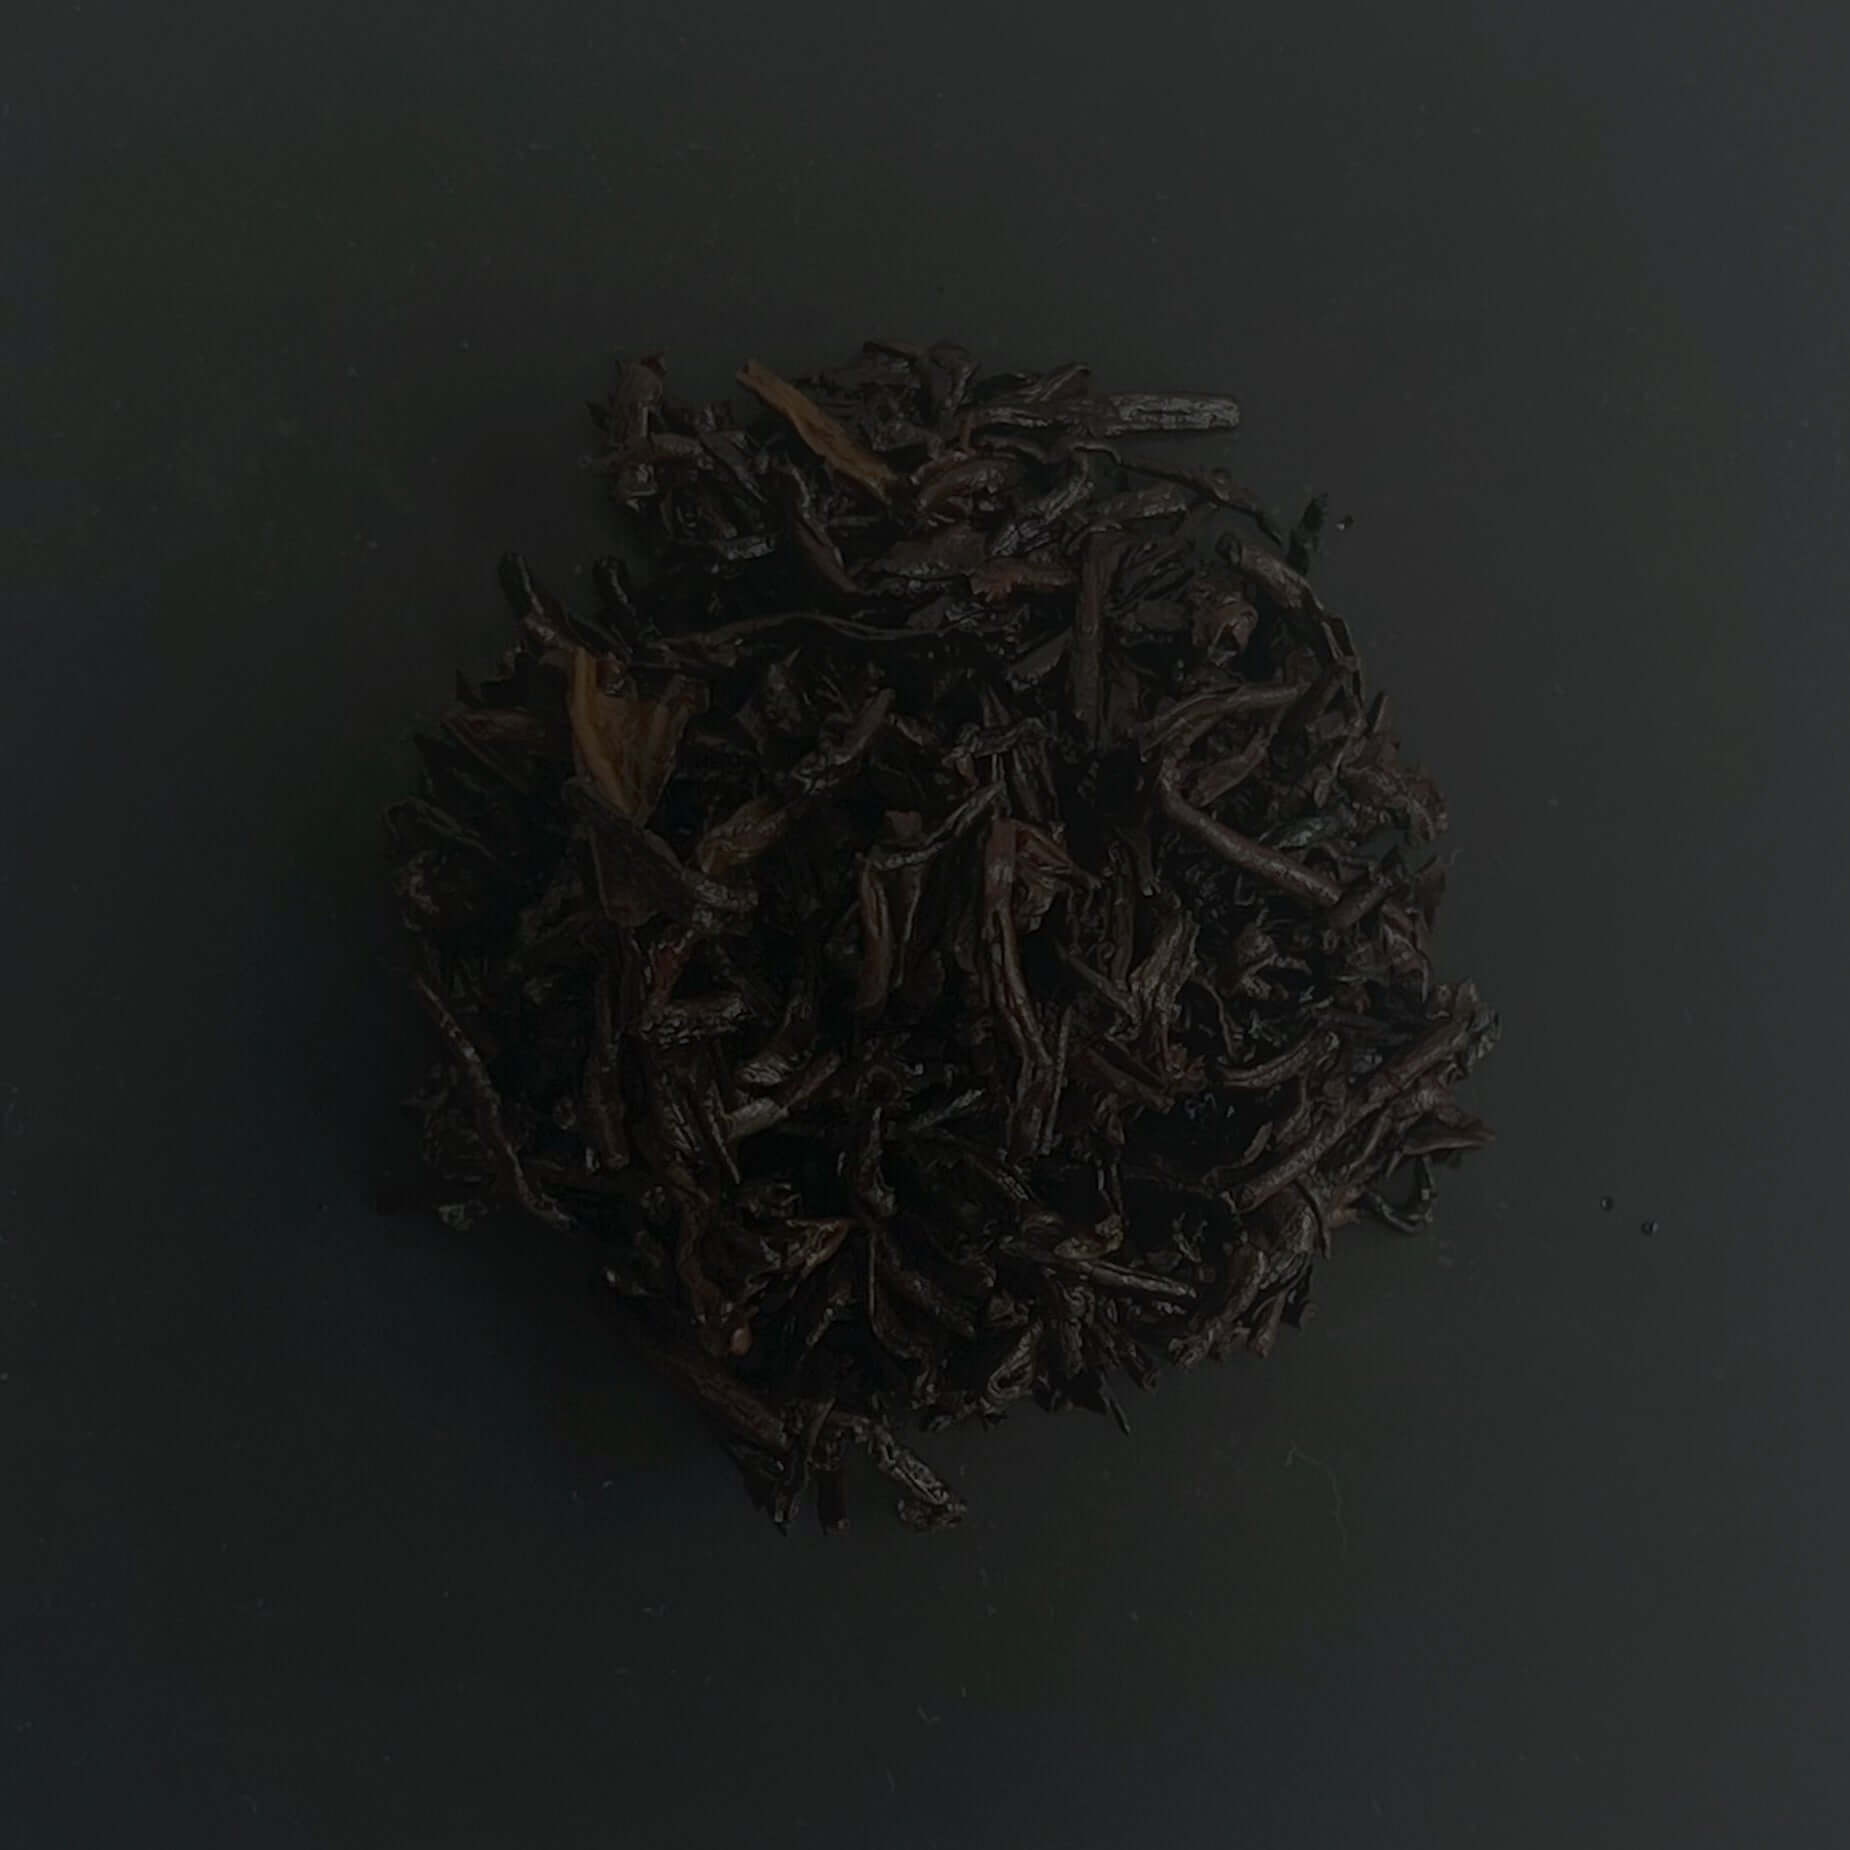 Black tea. Ripe Puerh tea. Yunnan. Shou puerh. Cooked puerh. pu erh. Ginseng